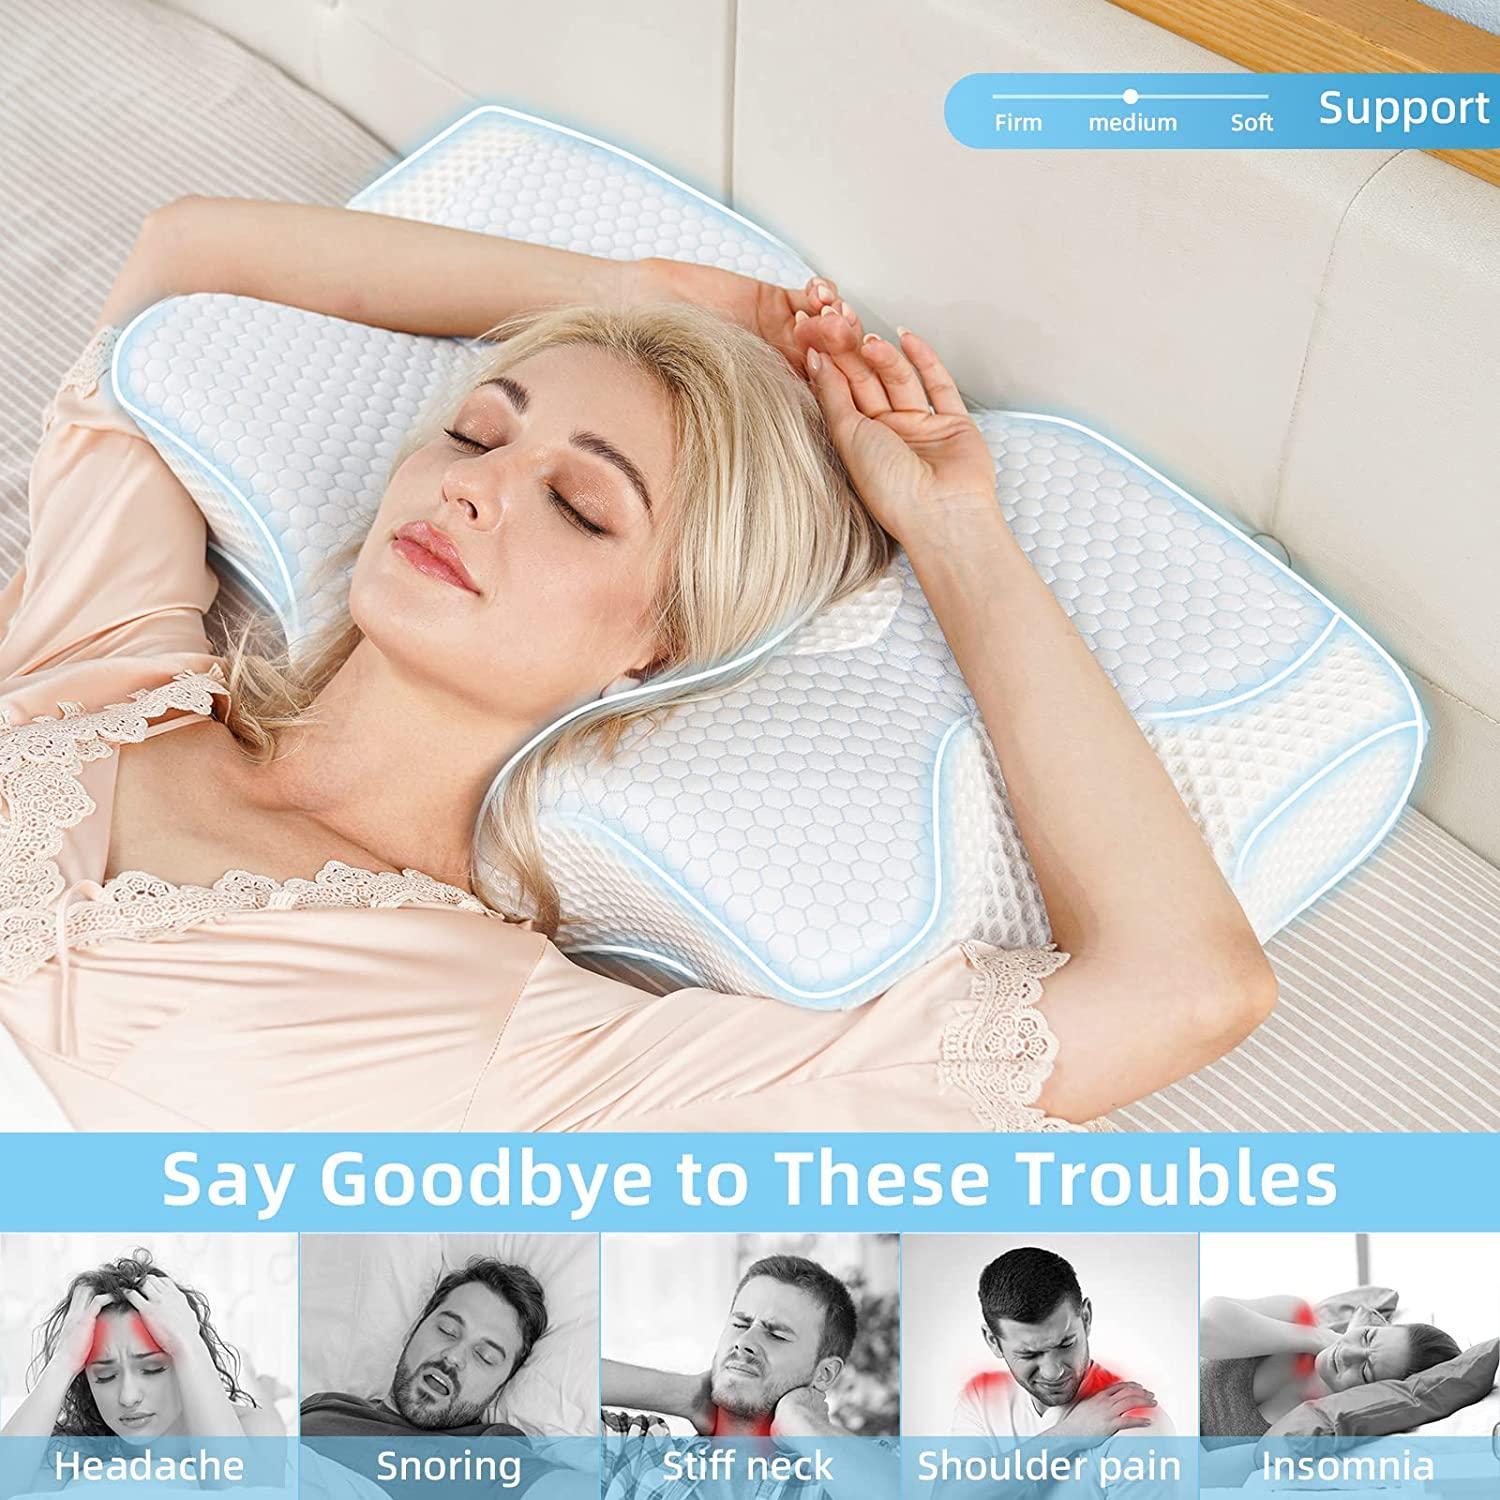 Pillows for Sleeping - XTX Memory Foam Pillow, Cervical Pillow for